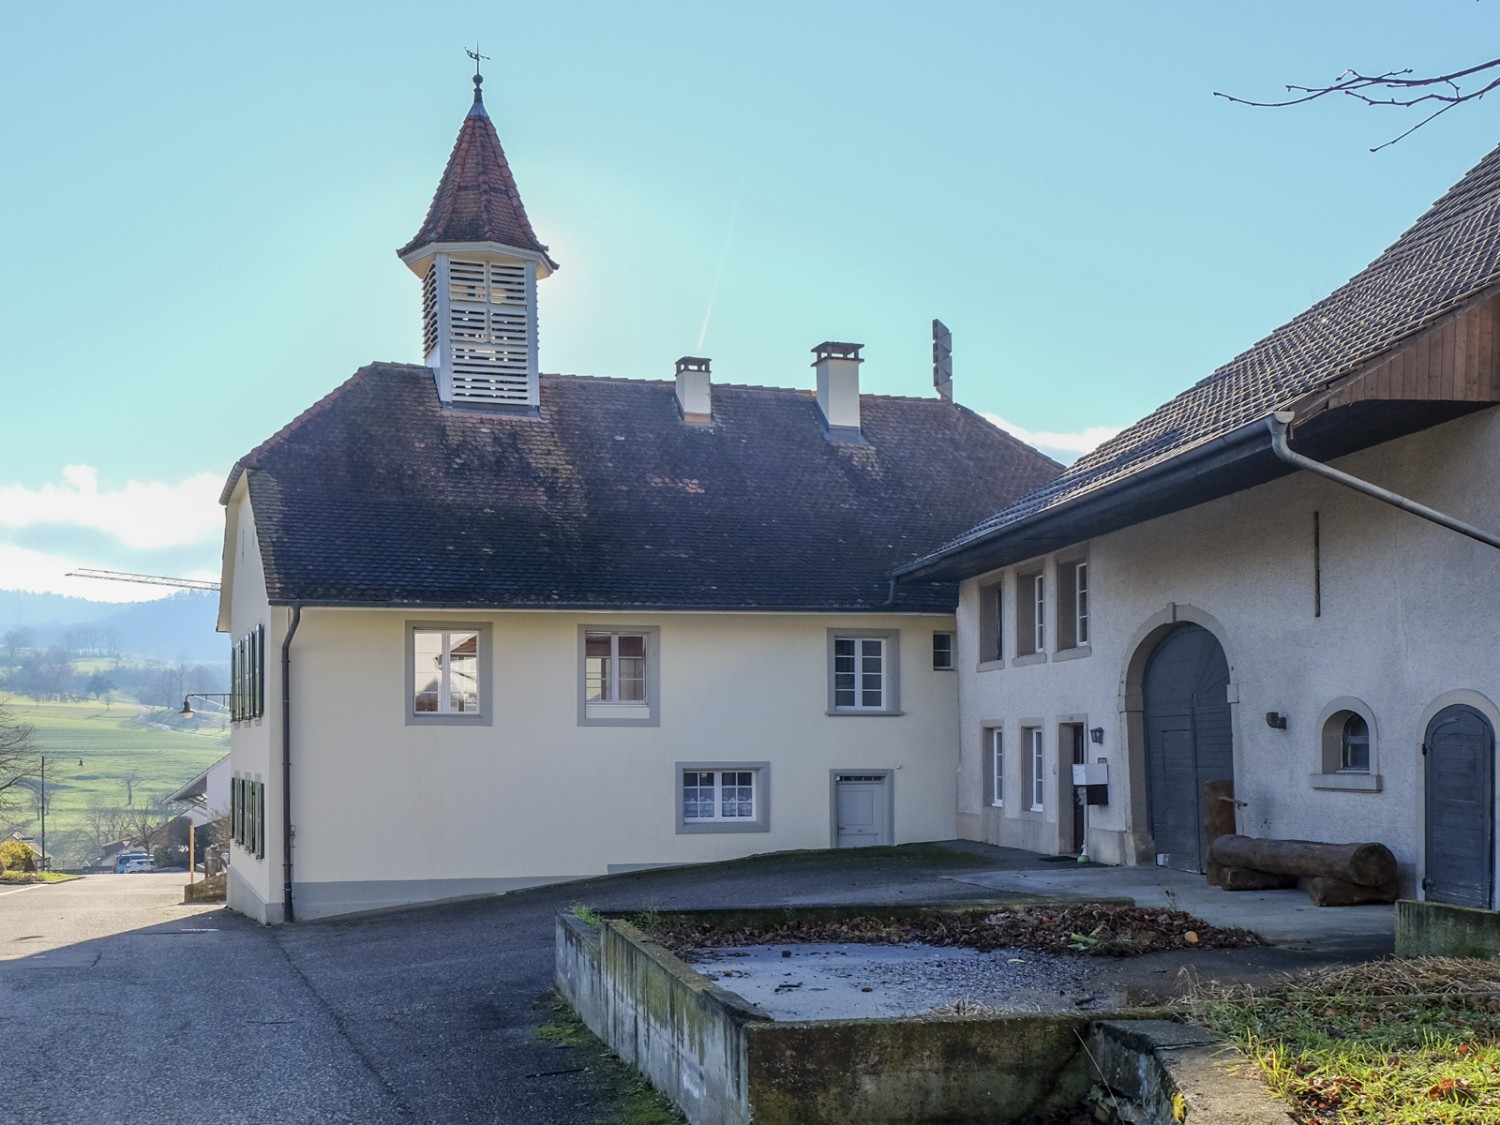 L’ancienne école du village. Il s’agissait d’une ferme, avant qu’elle ne devienne une école en 1830. Photo: Elsbeth Flüeler